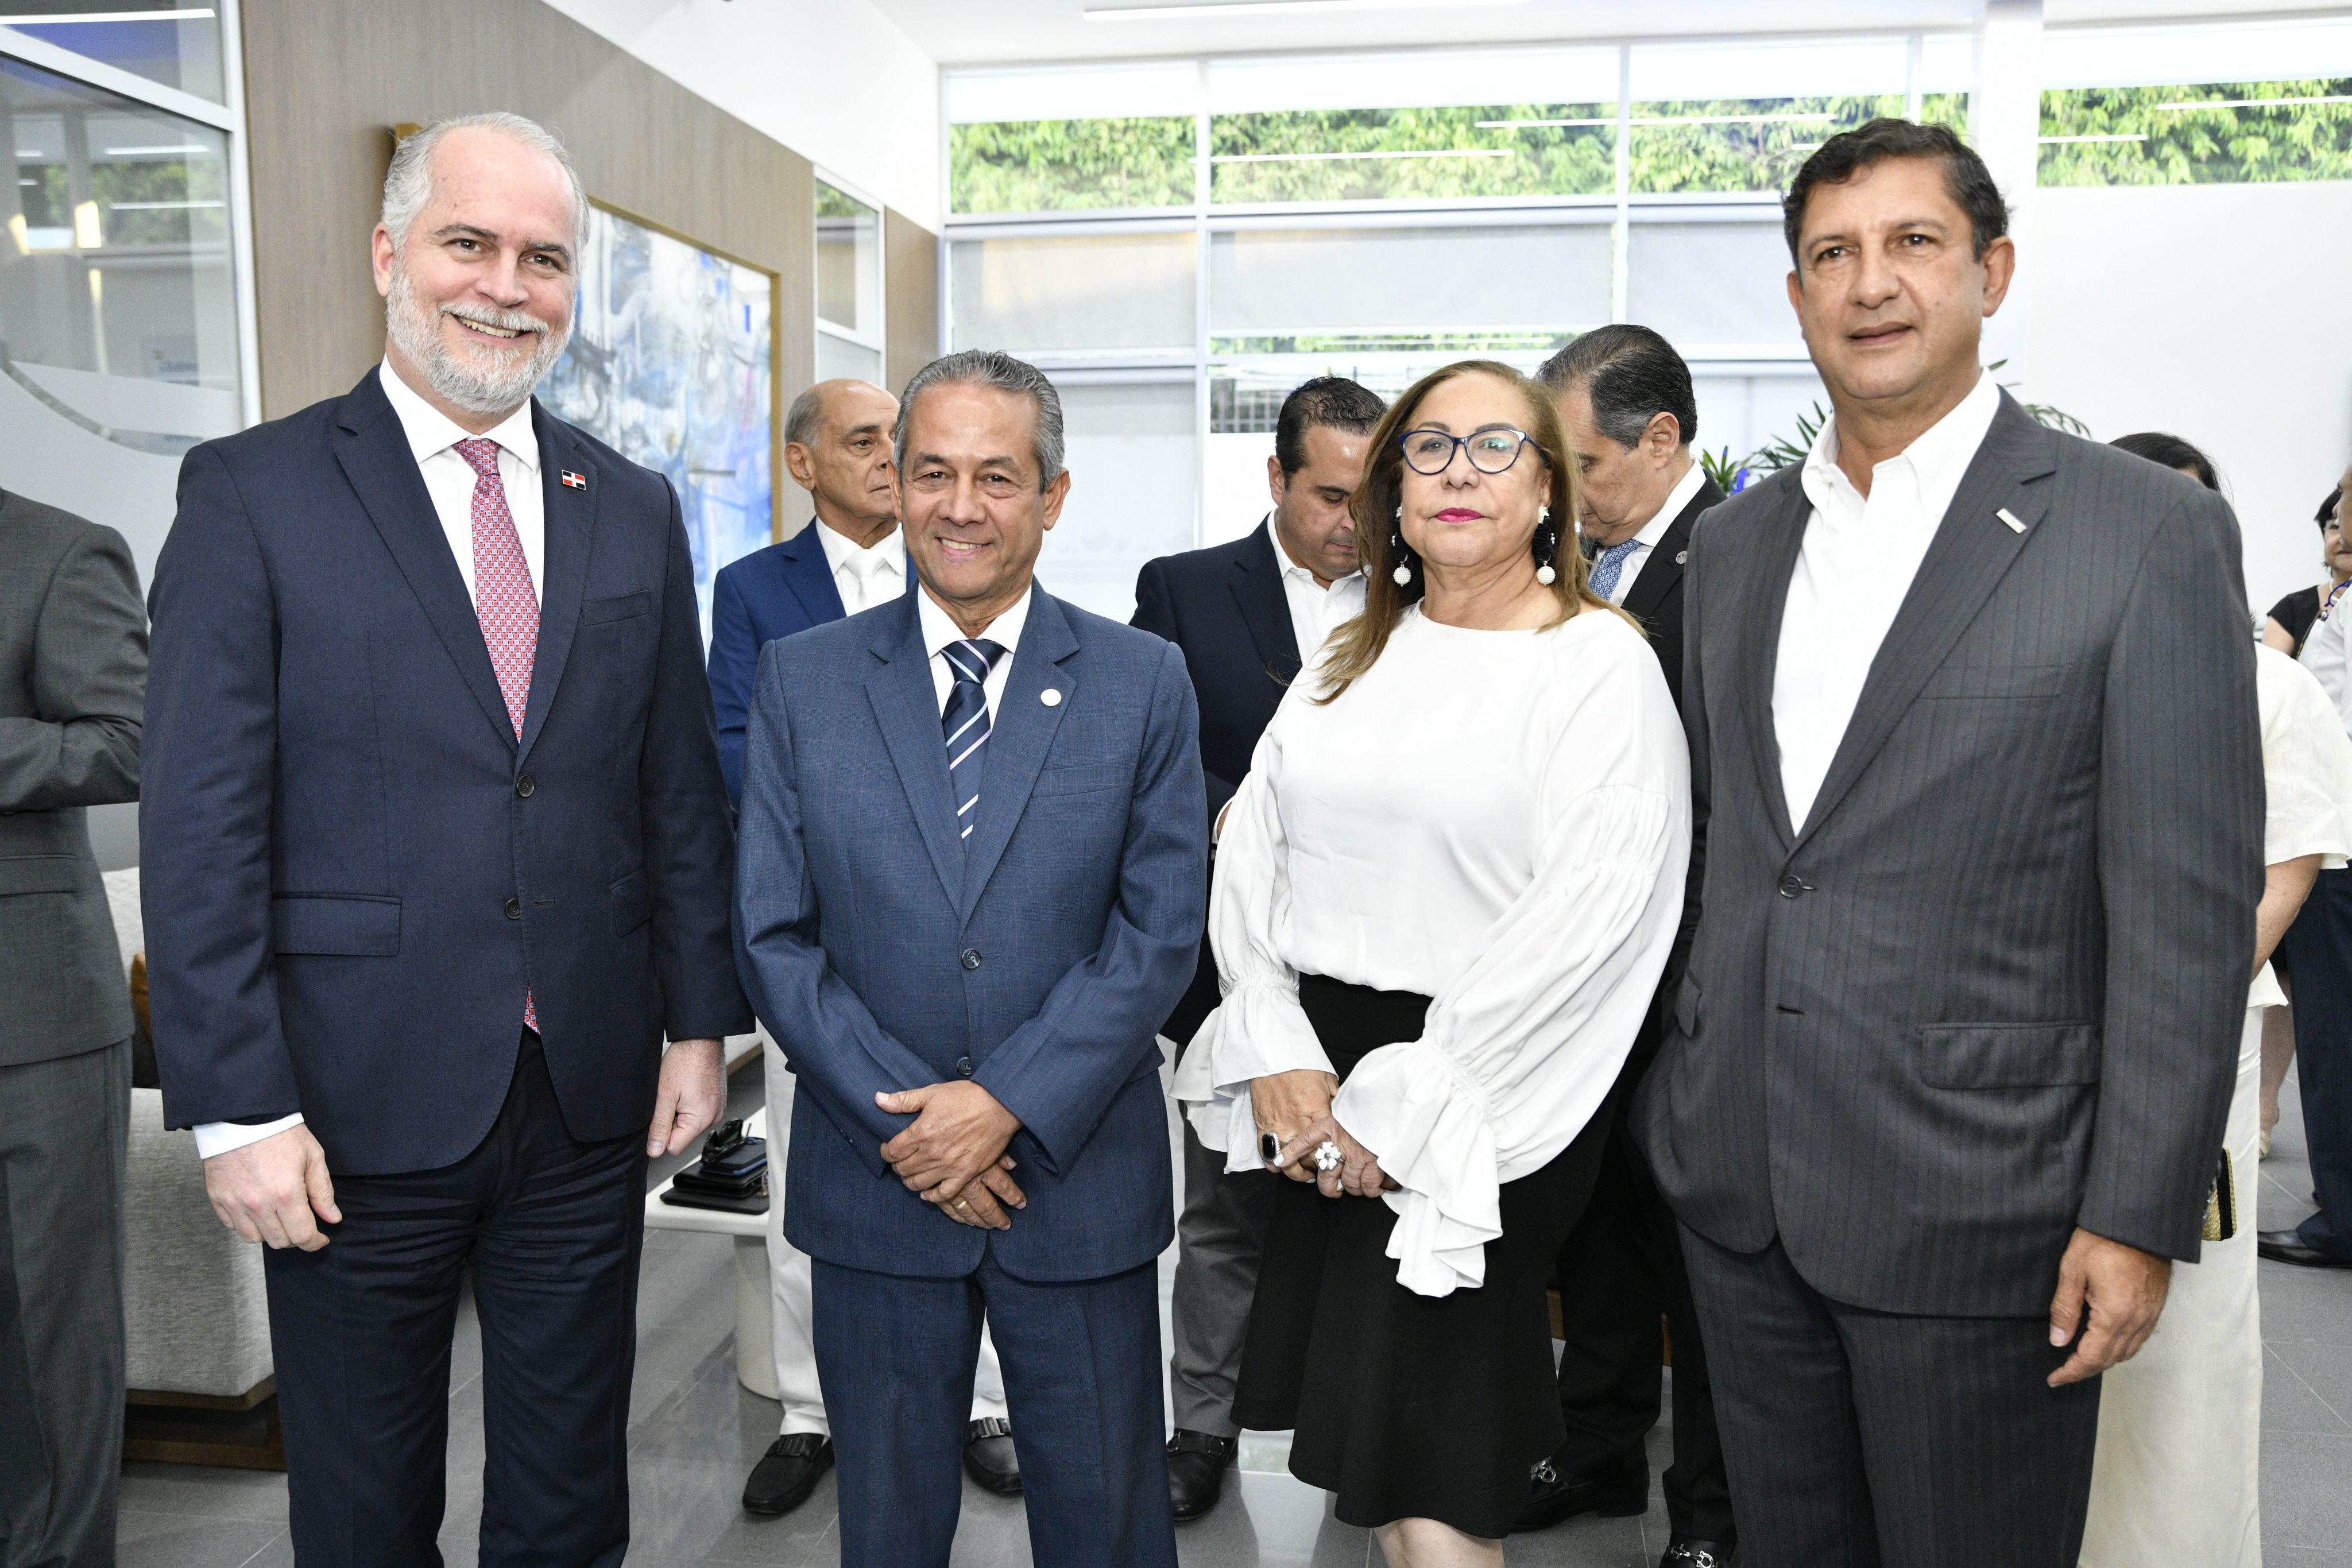 El evento contó con la presencia del Superintendente de Bancos, Alejandro Fernández W.; la gobernadora provincial Rosa Santos; así como asociados, clientes y representantes del empresariado de la provincia.